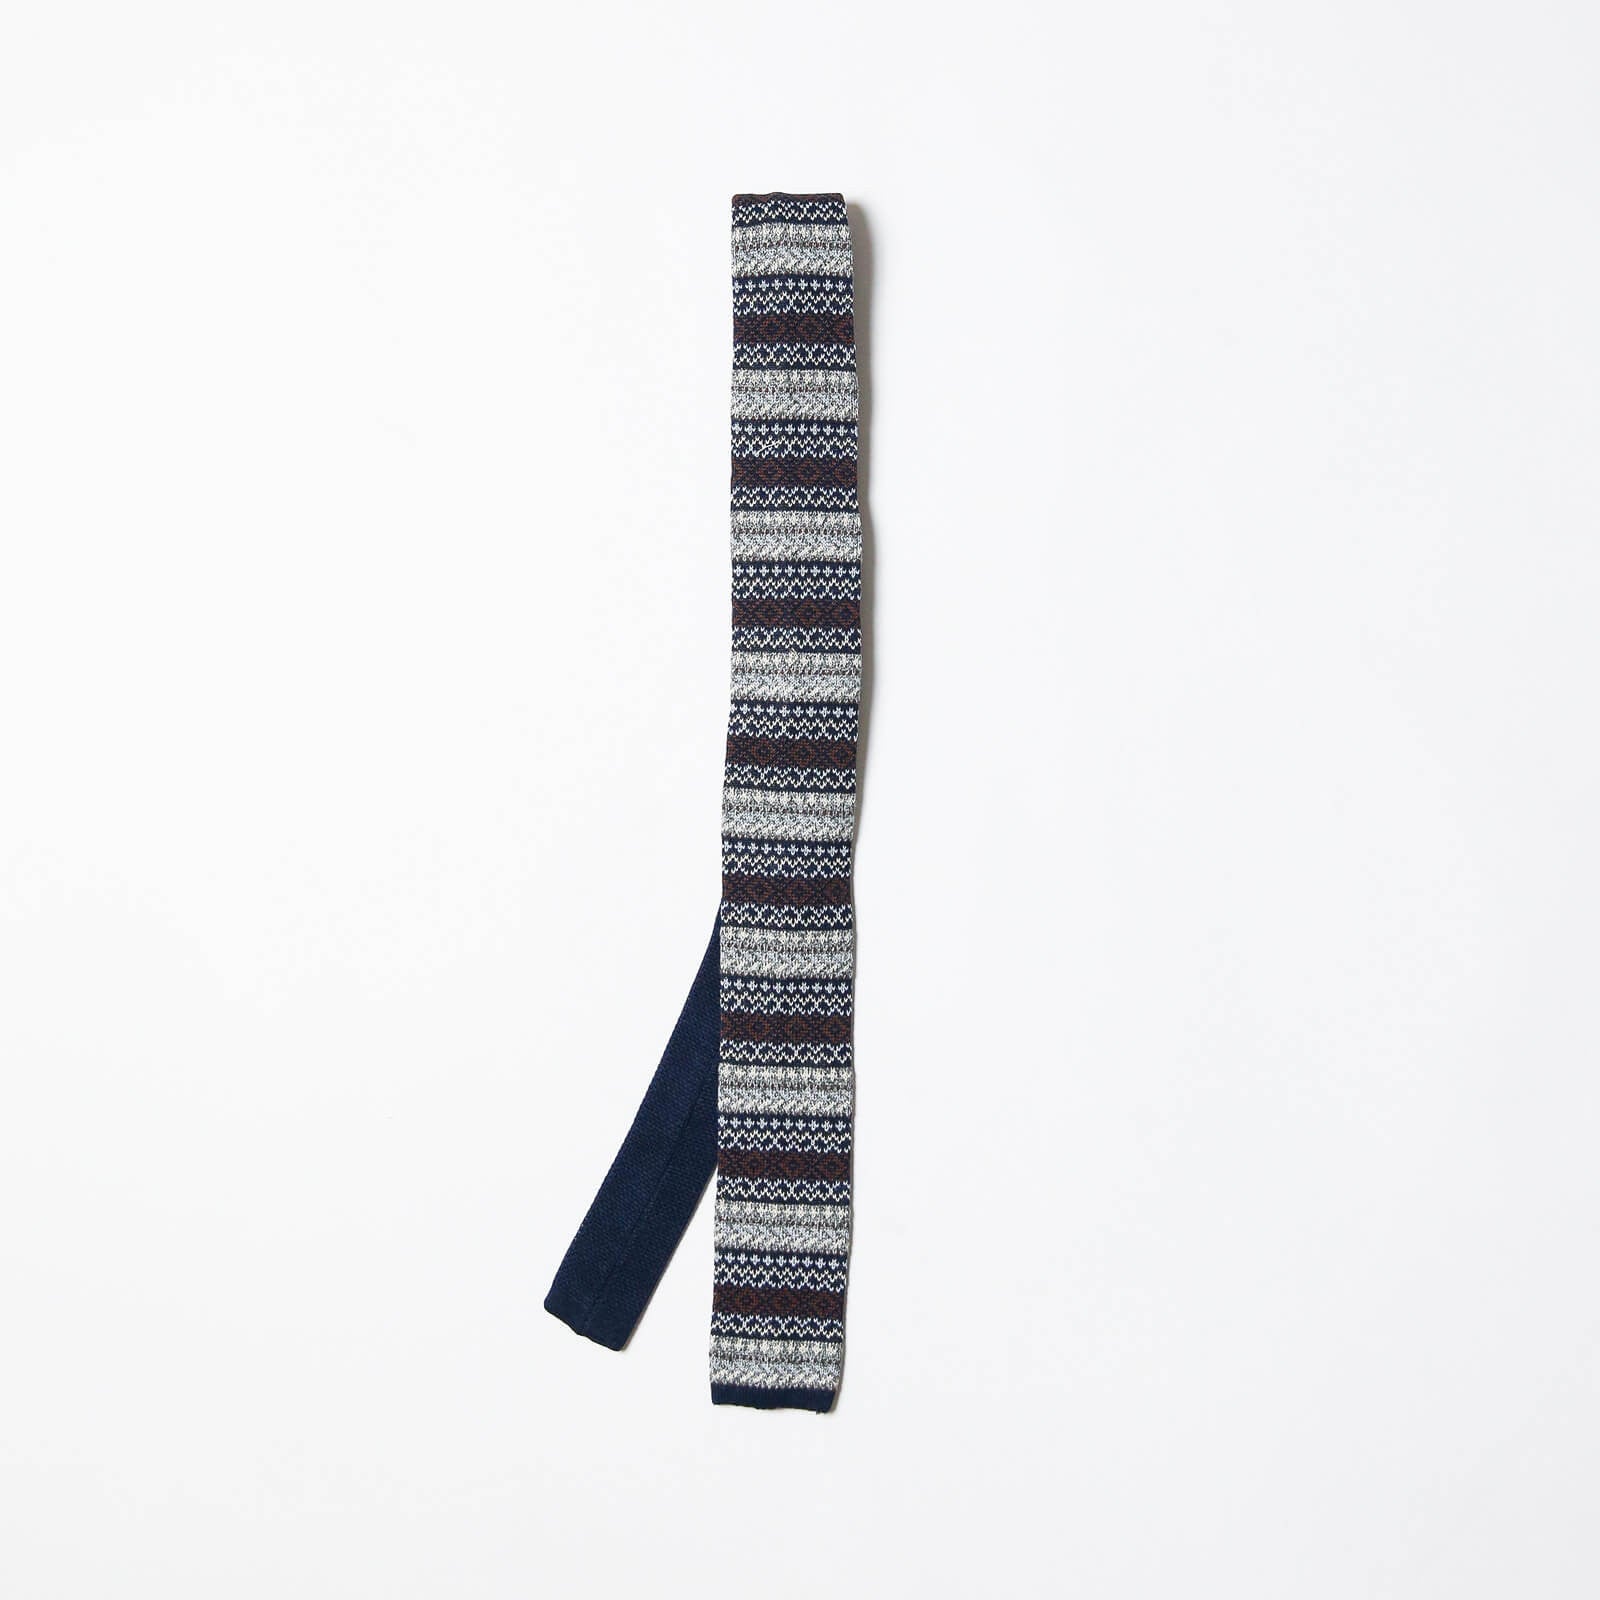 Vassar Autumnal Knit Tie - Fair Isle